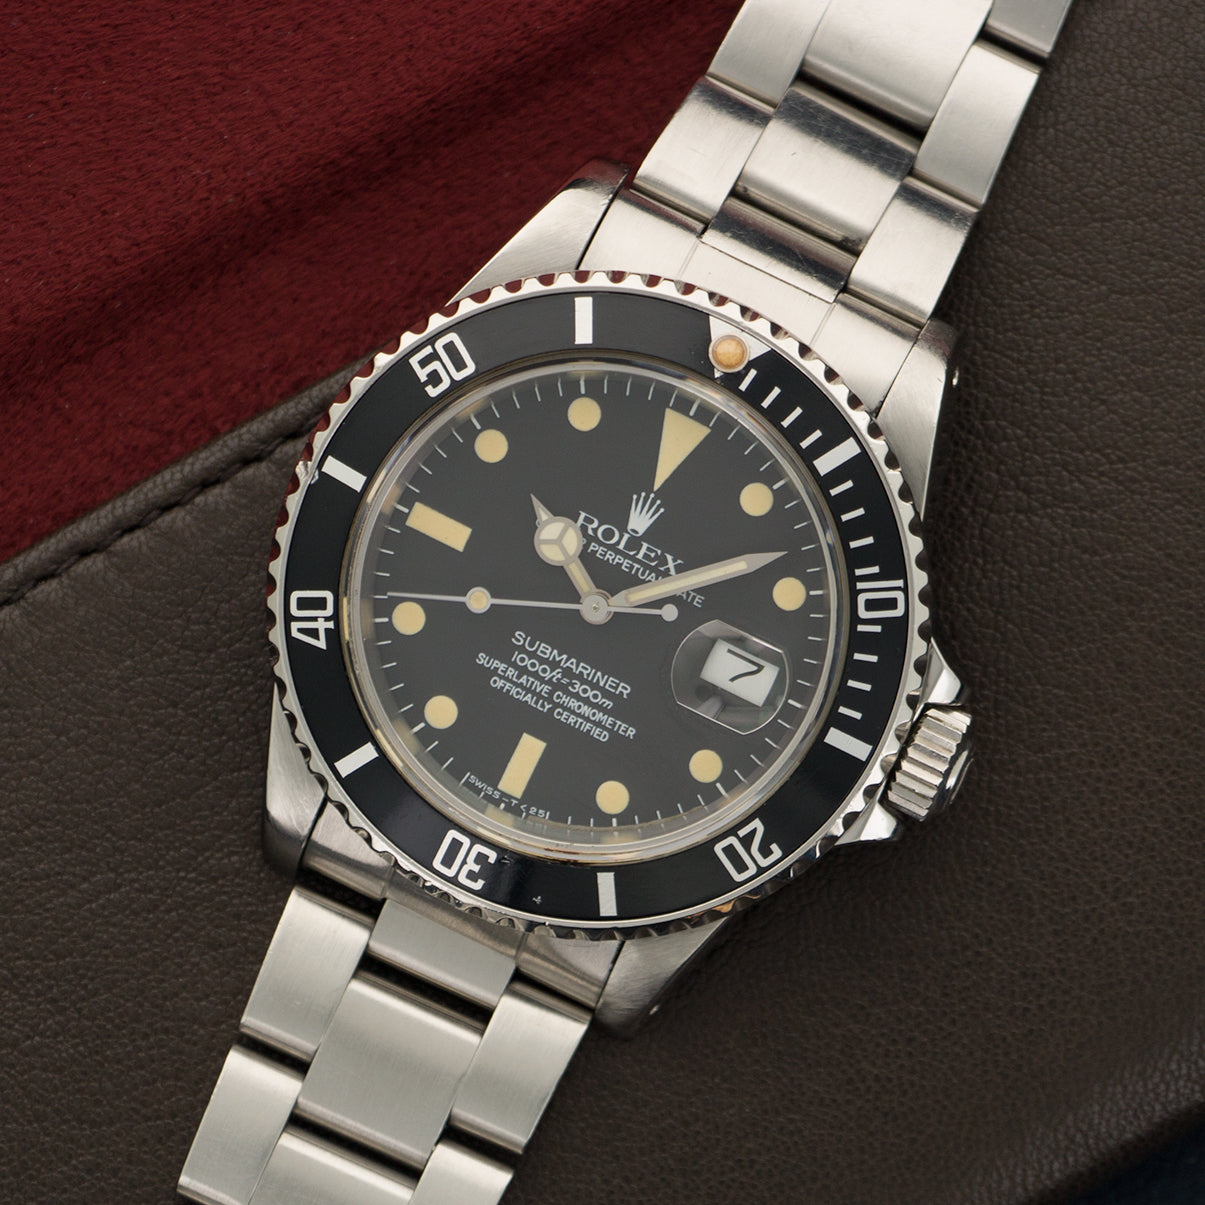 Rolex - Rolex Submariner Stainless Steel Ref. 16800 - The Keystone Watches